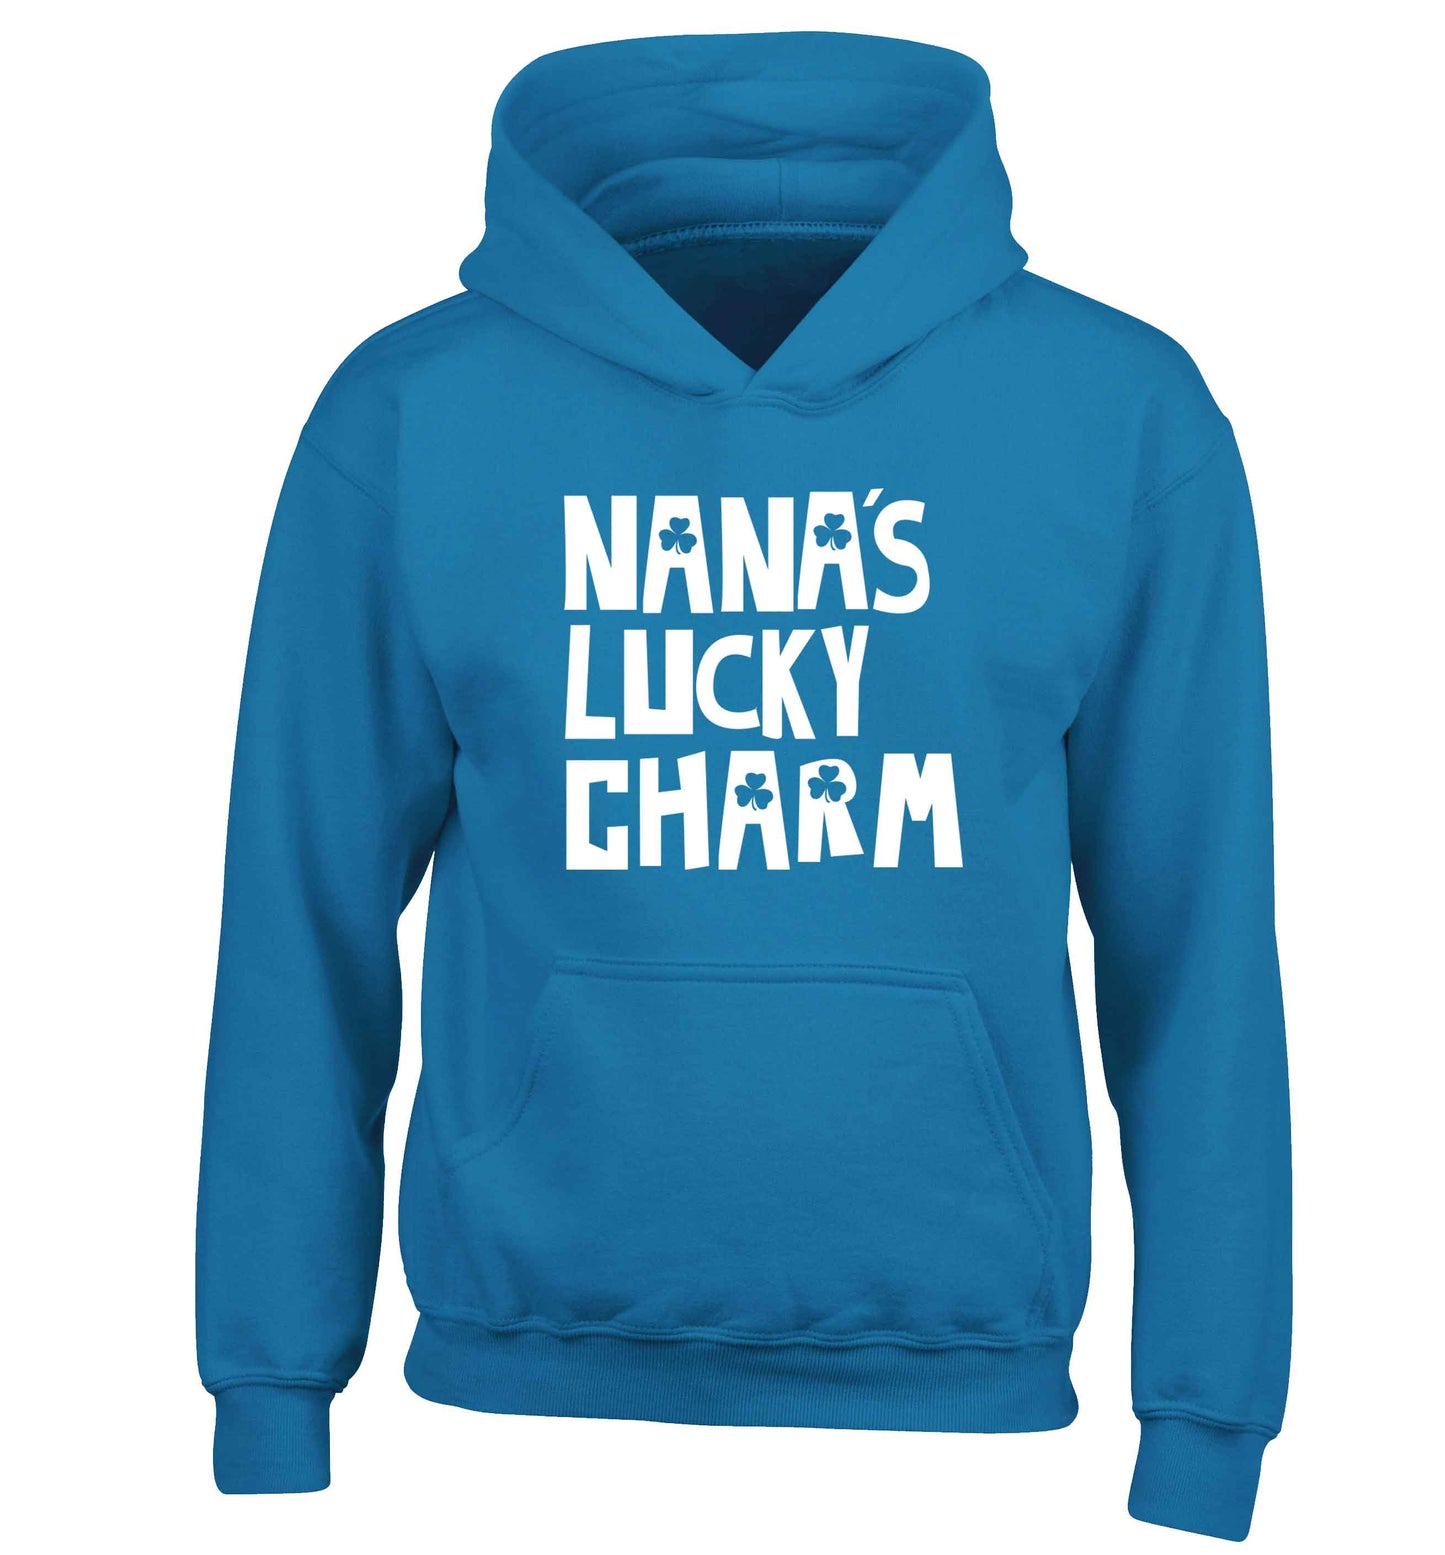 Nana's lucky charm children's blue hoodie 12-13 Years